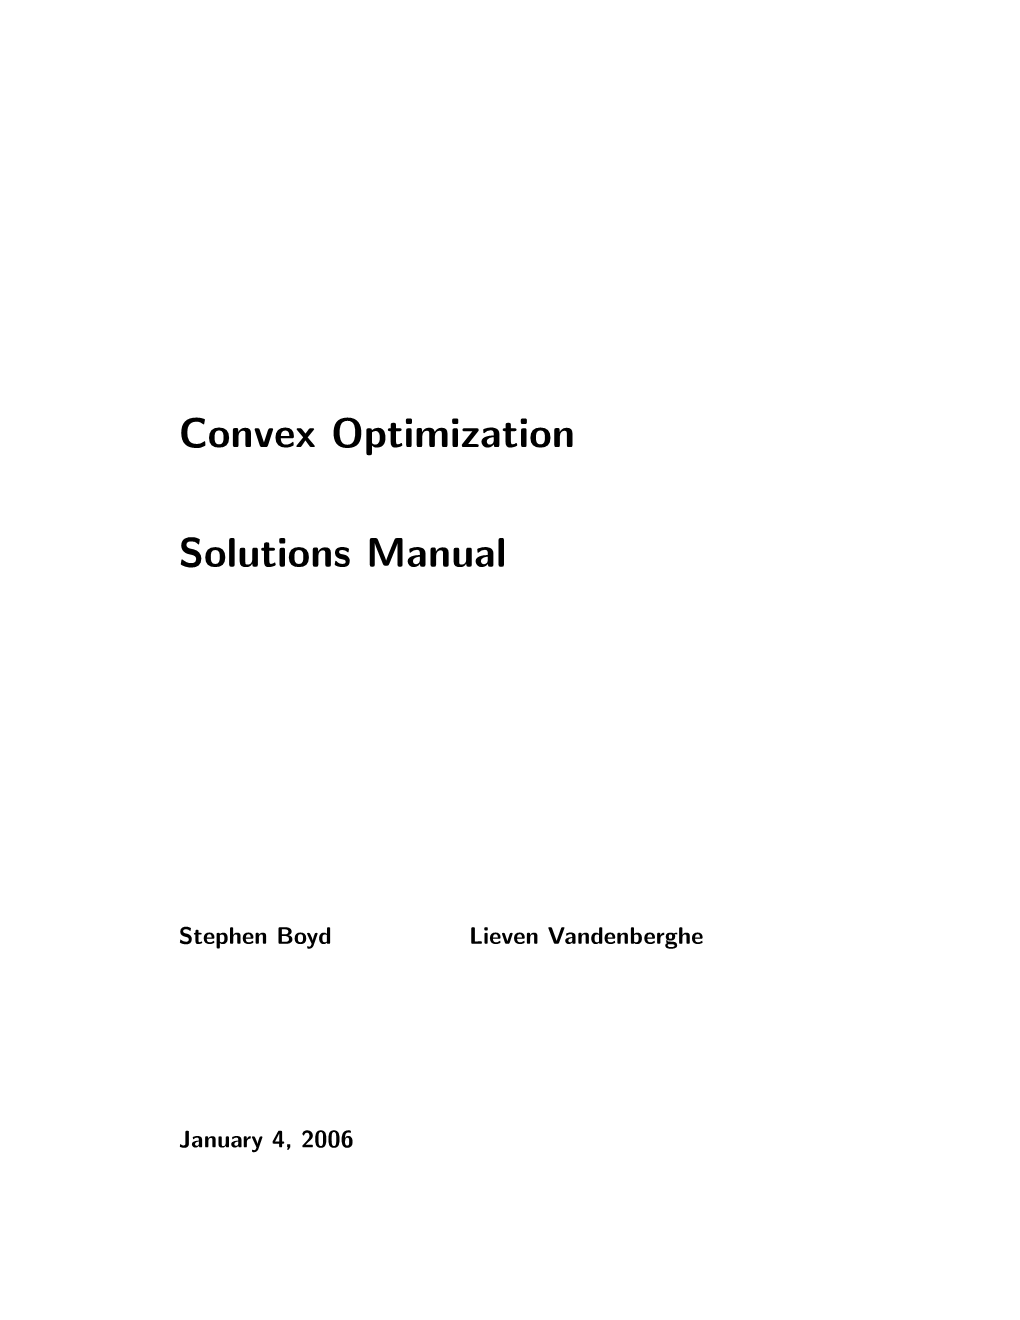 Convex Optimization Solutions Manual